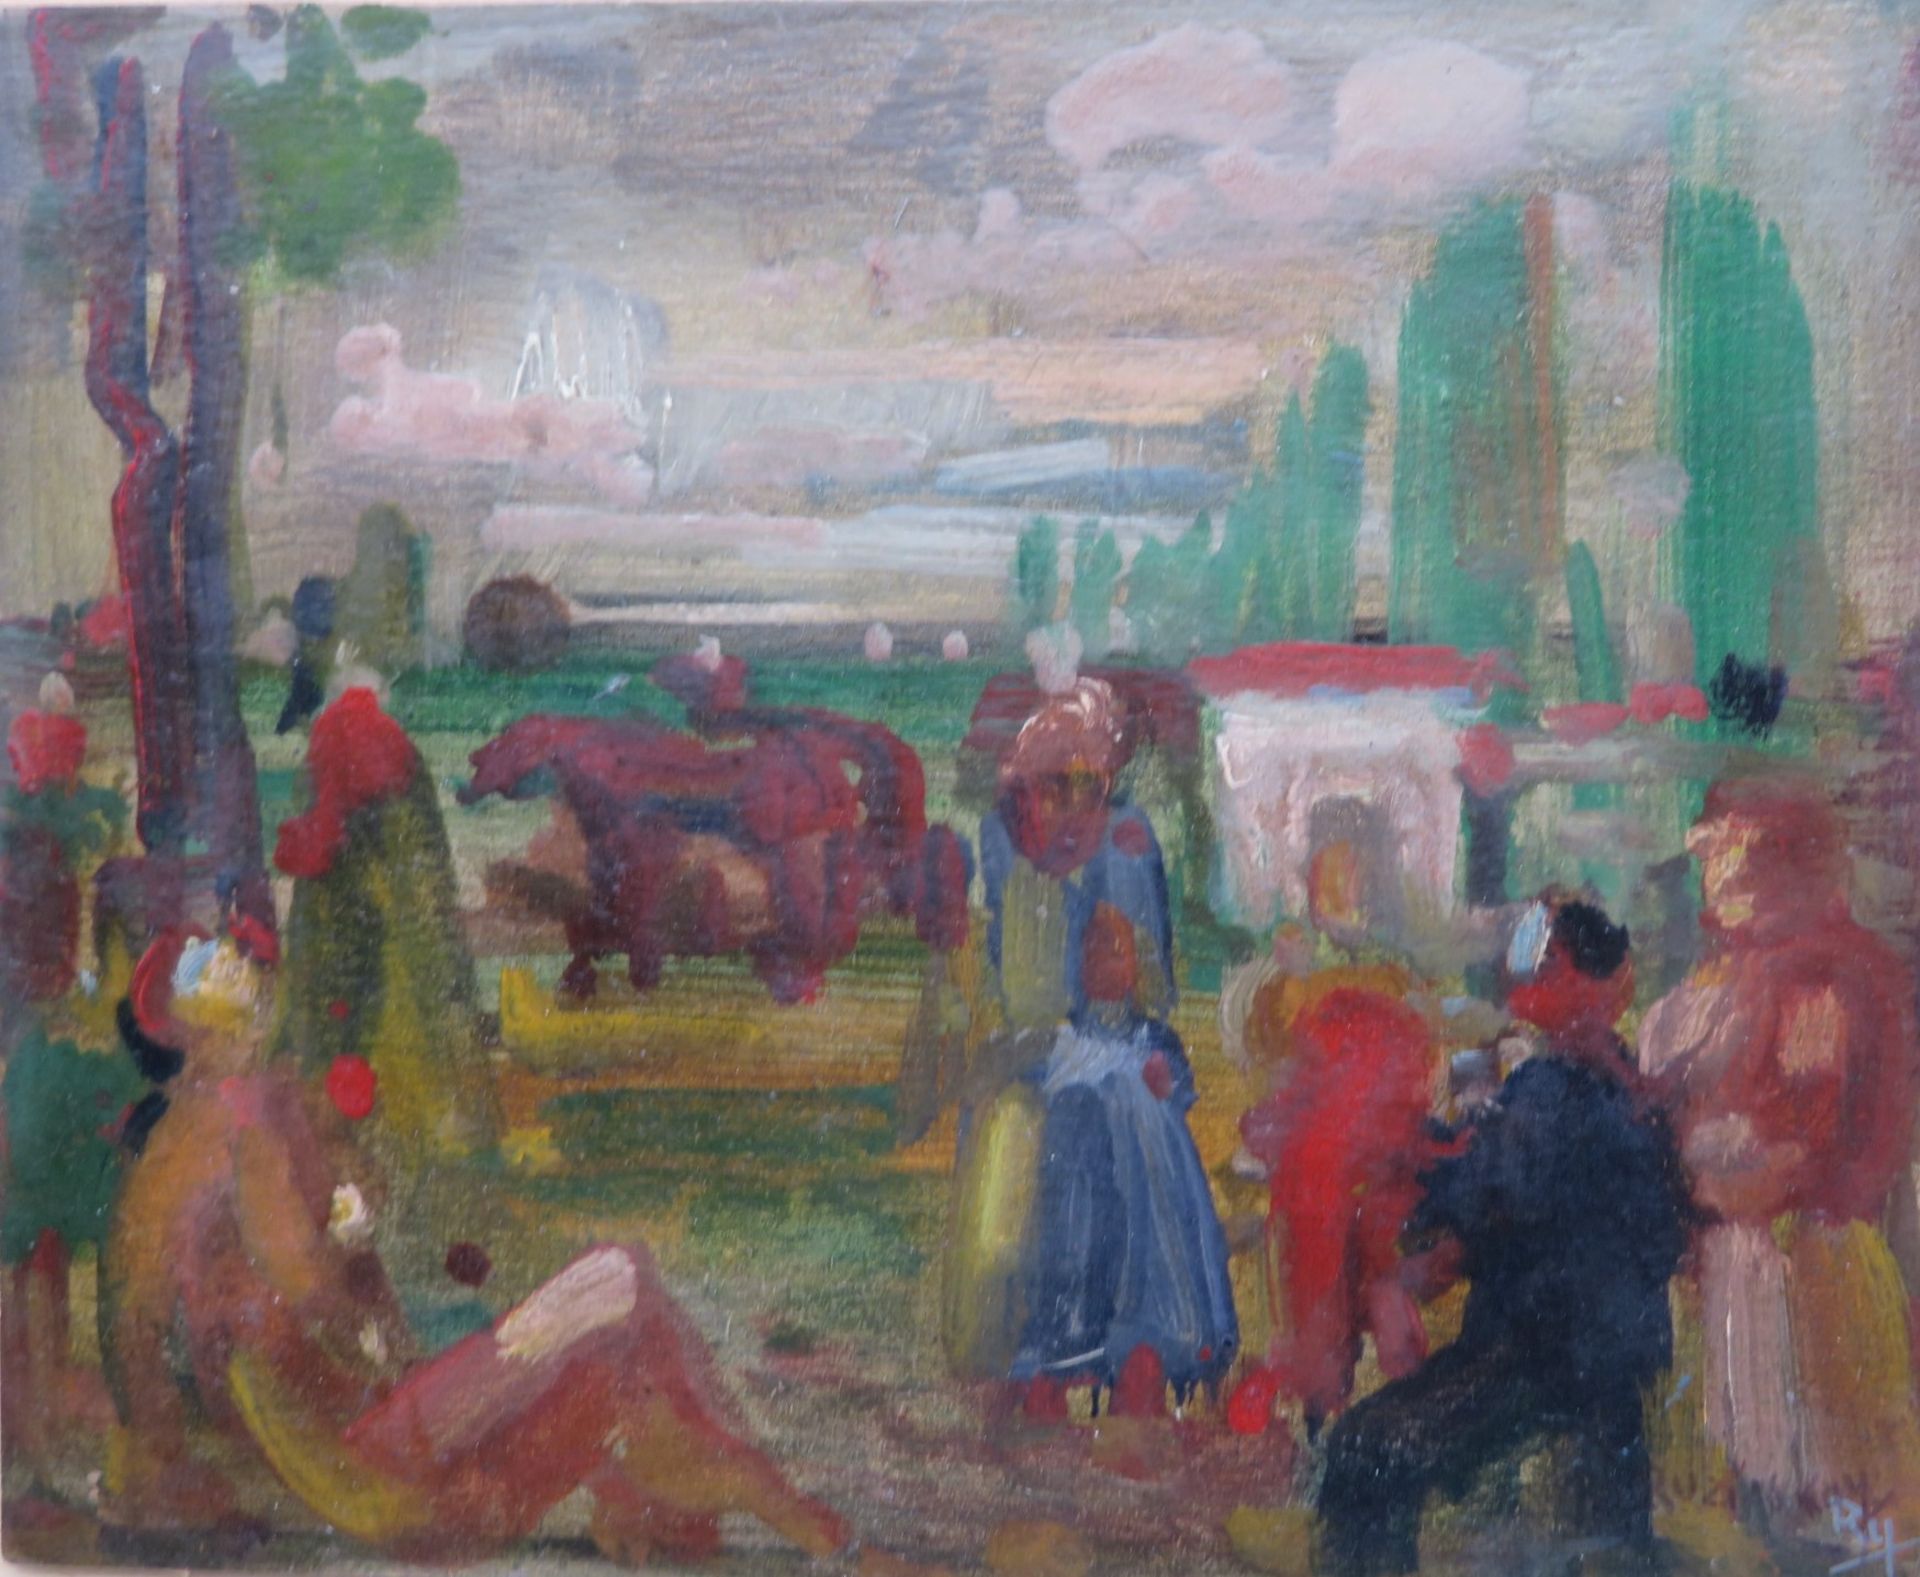 Ruzicskay, György, 1896 - 1993, Szarvas - Budapest, Ungarischer Maler,